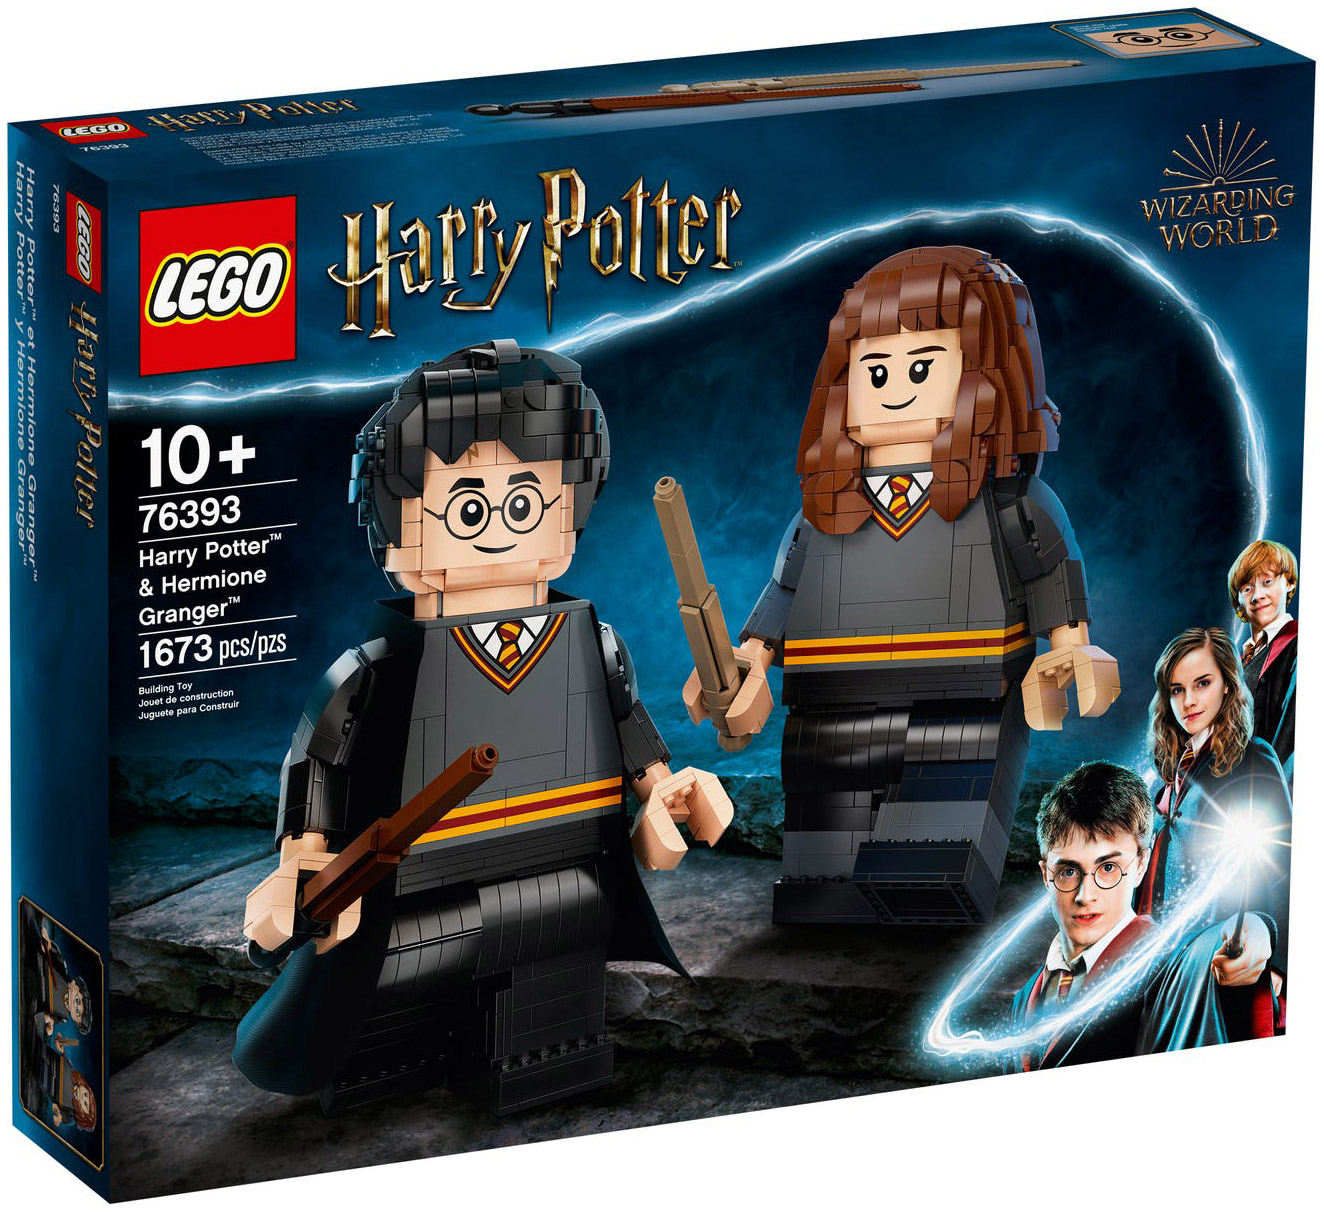 LEGO Harry Potter 76393 pas cher, Harry Potter et Hermione Granger